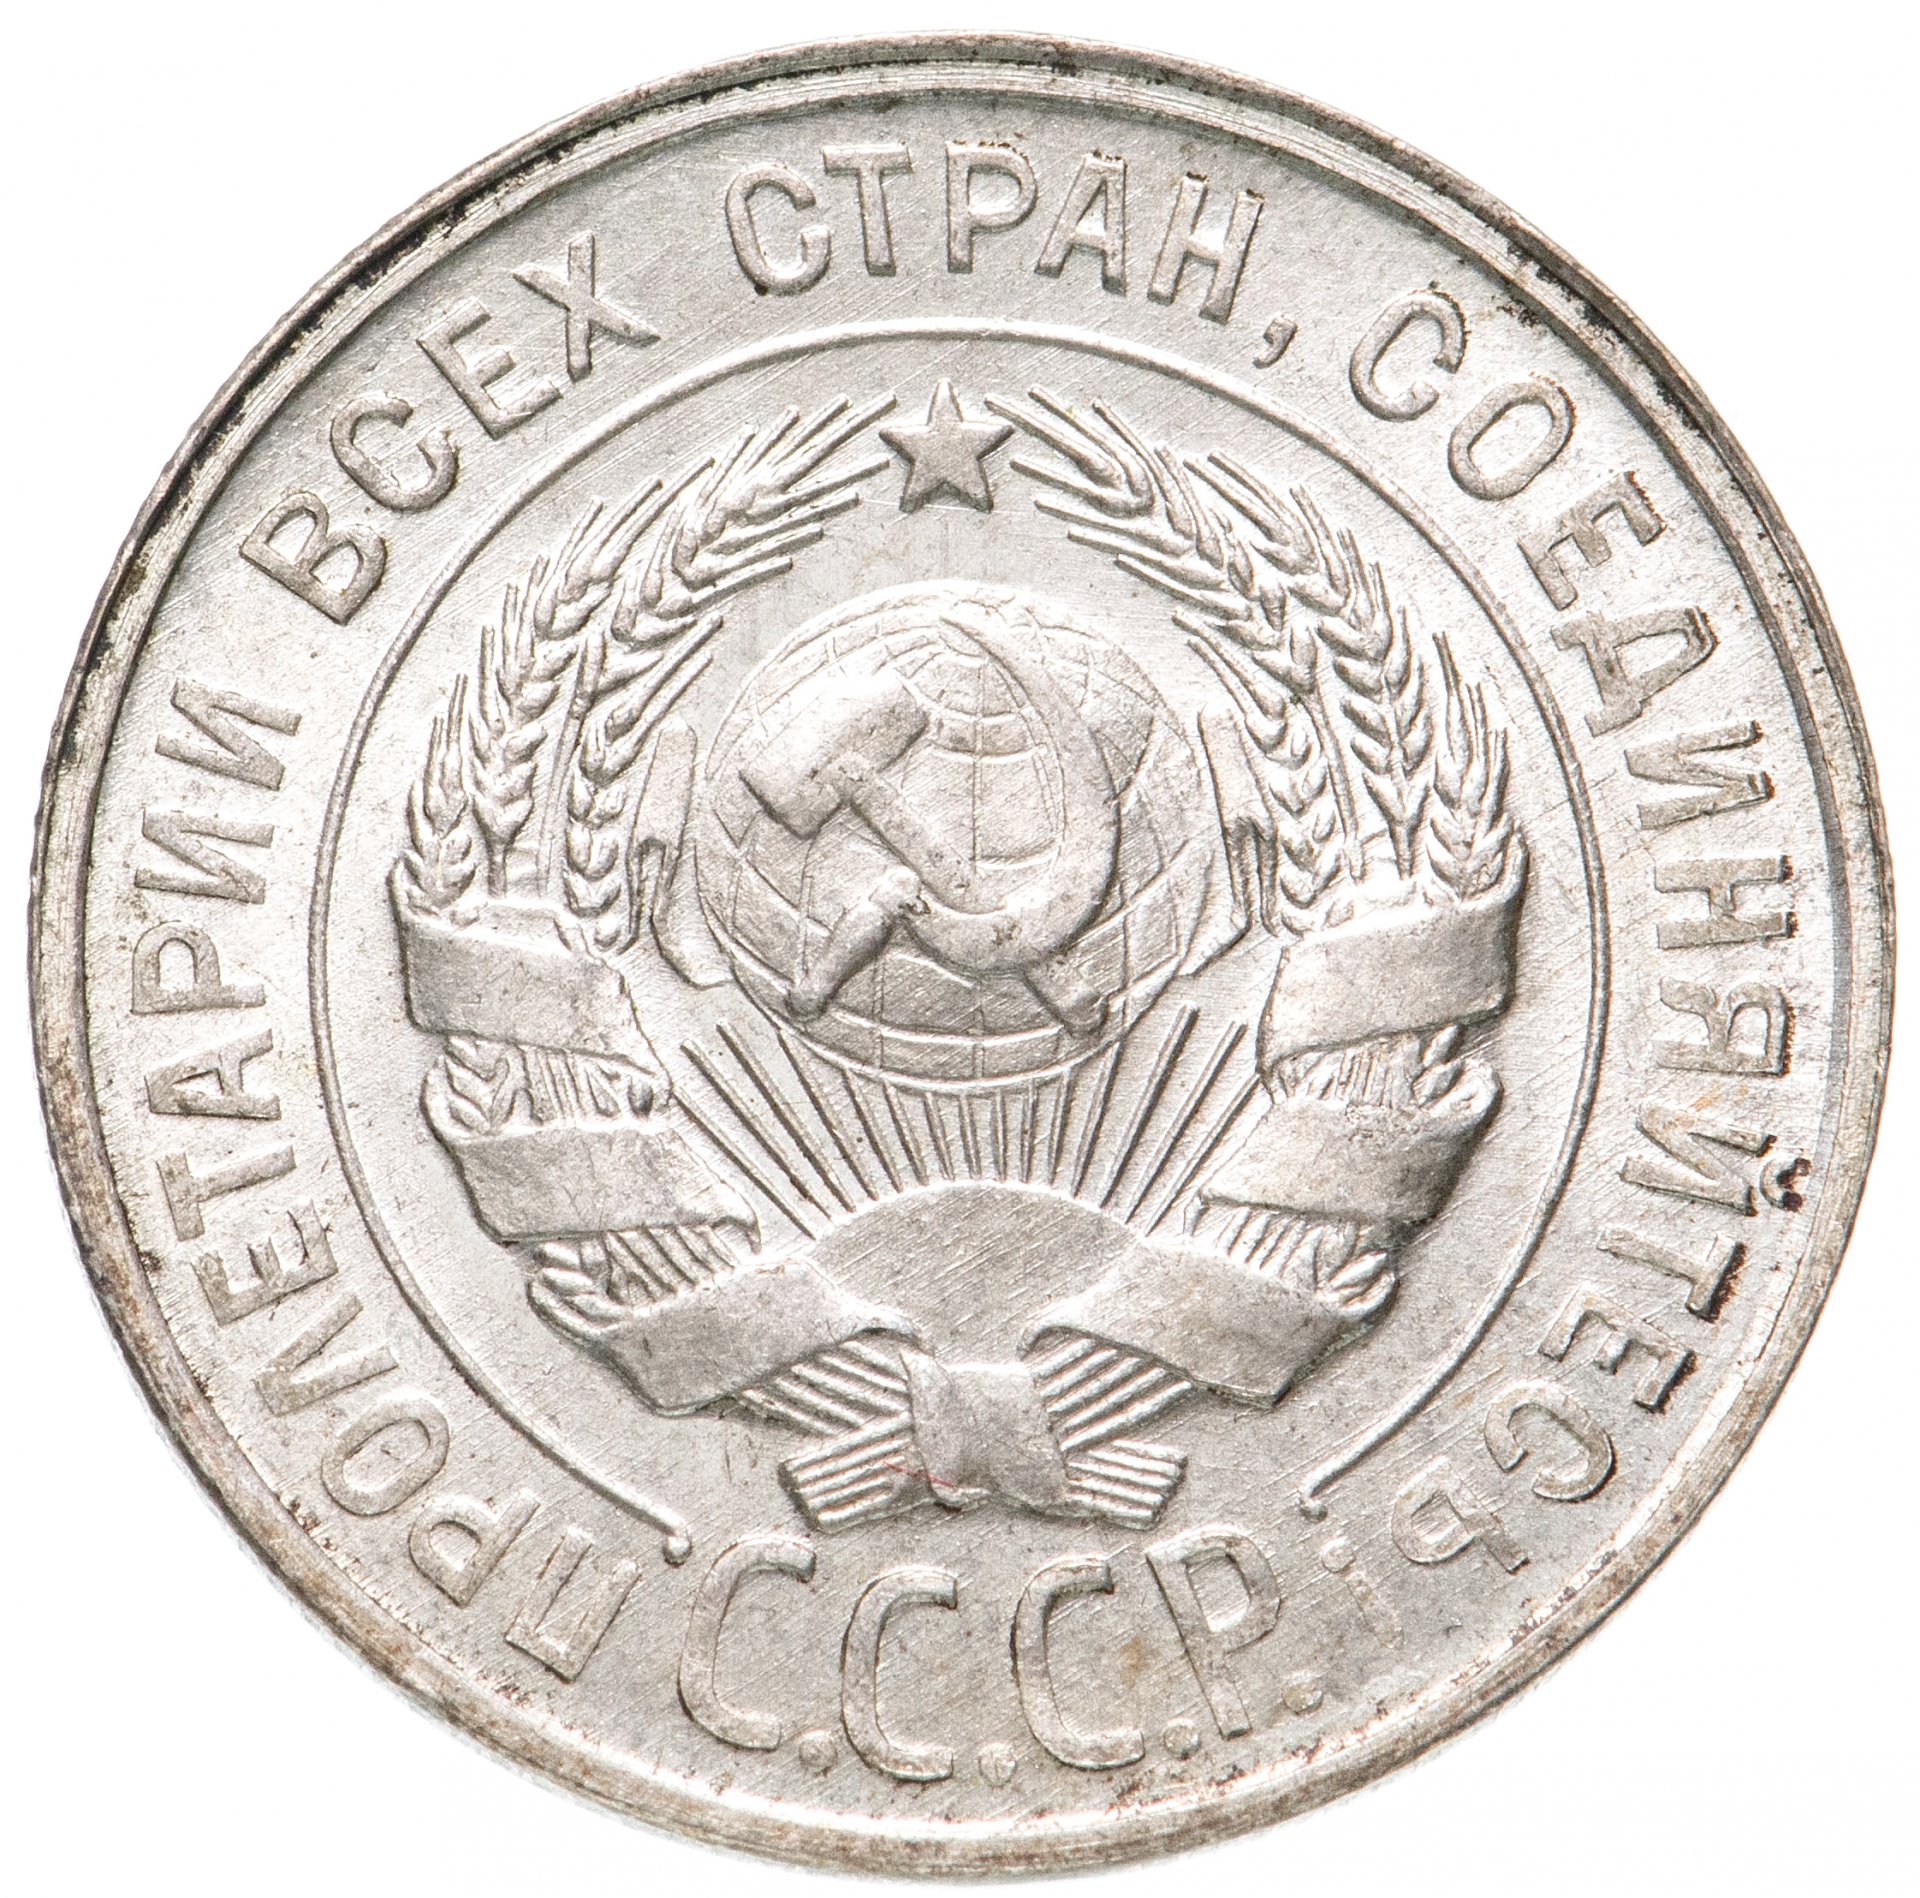 20 копеек 1929. Монета 20 копеек 1929 UNC. Монеты СССР 1929. Немецкая Империя монета 10 копеек 1929 год.